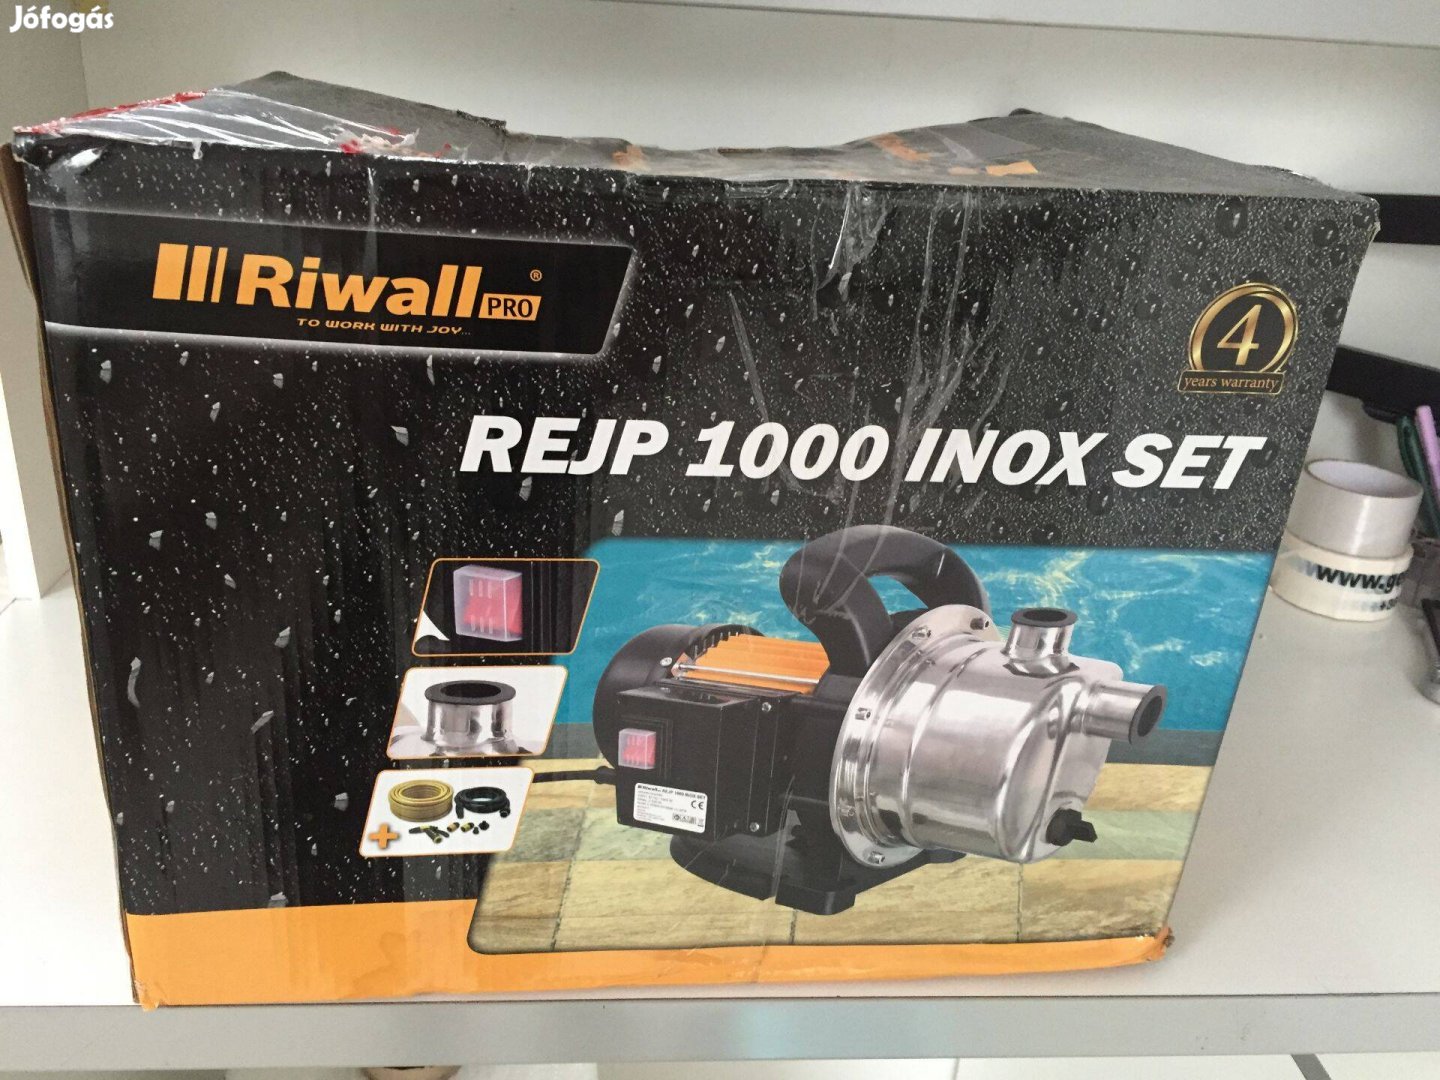 Riwall Pro Rejp 1000 Inox SET Kerti szivattyú készlet 1000W